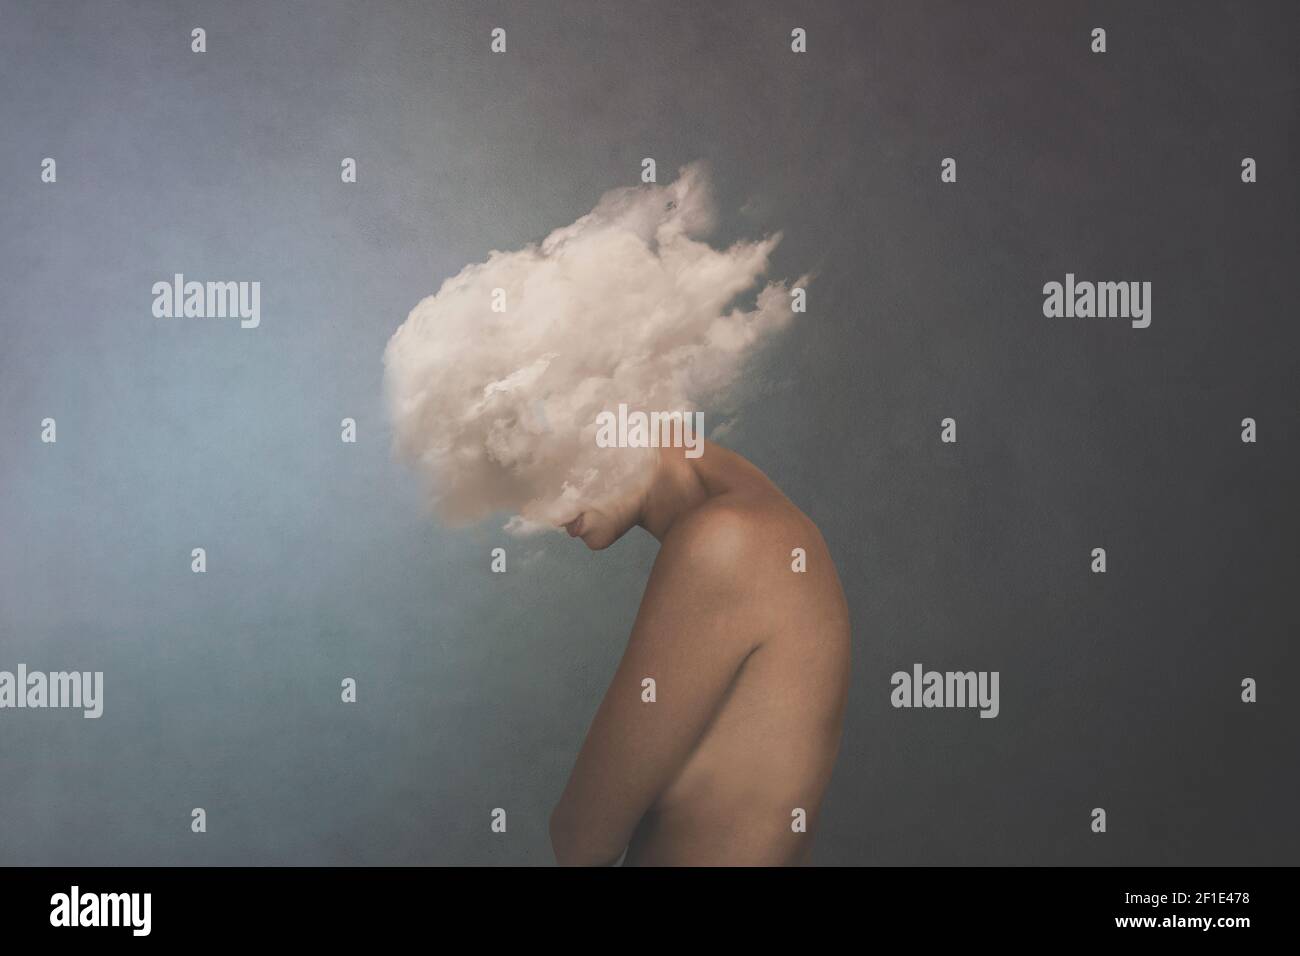 image surréaliste d'un nuage blanc couvrant le visage d'une femme, concept de liberté Banque D'Images